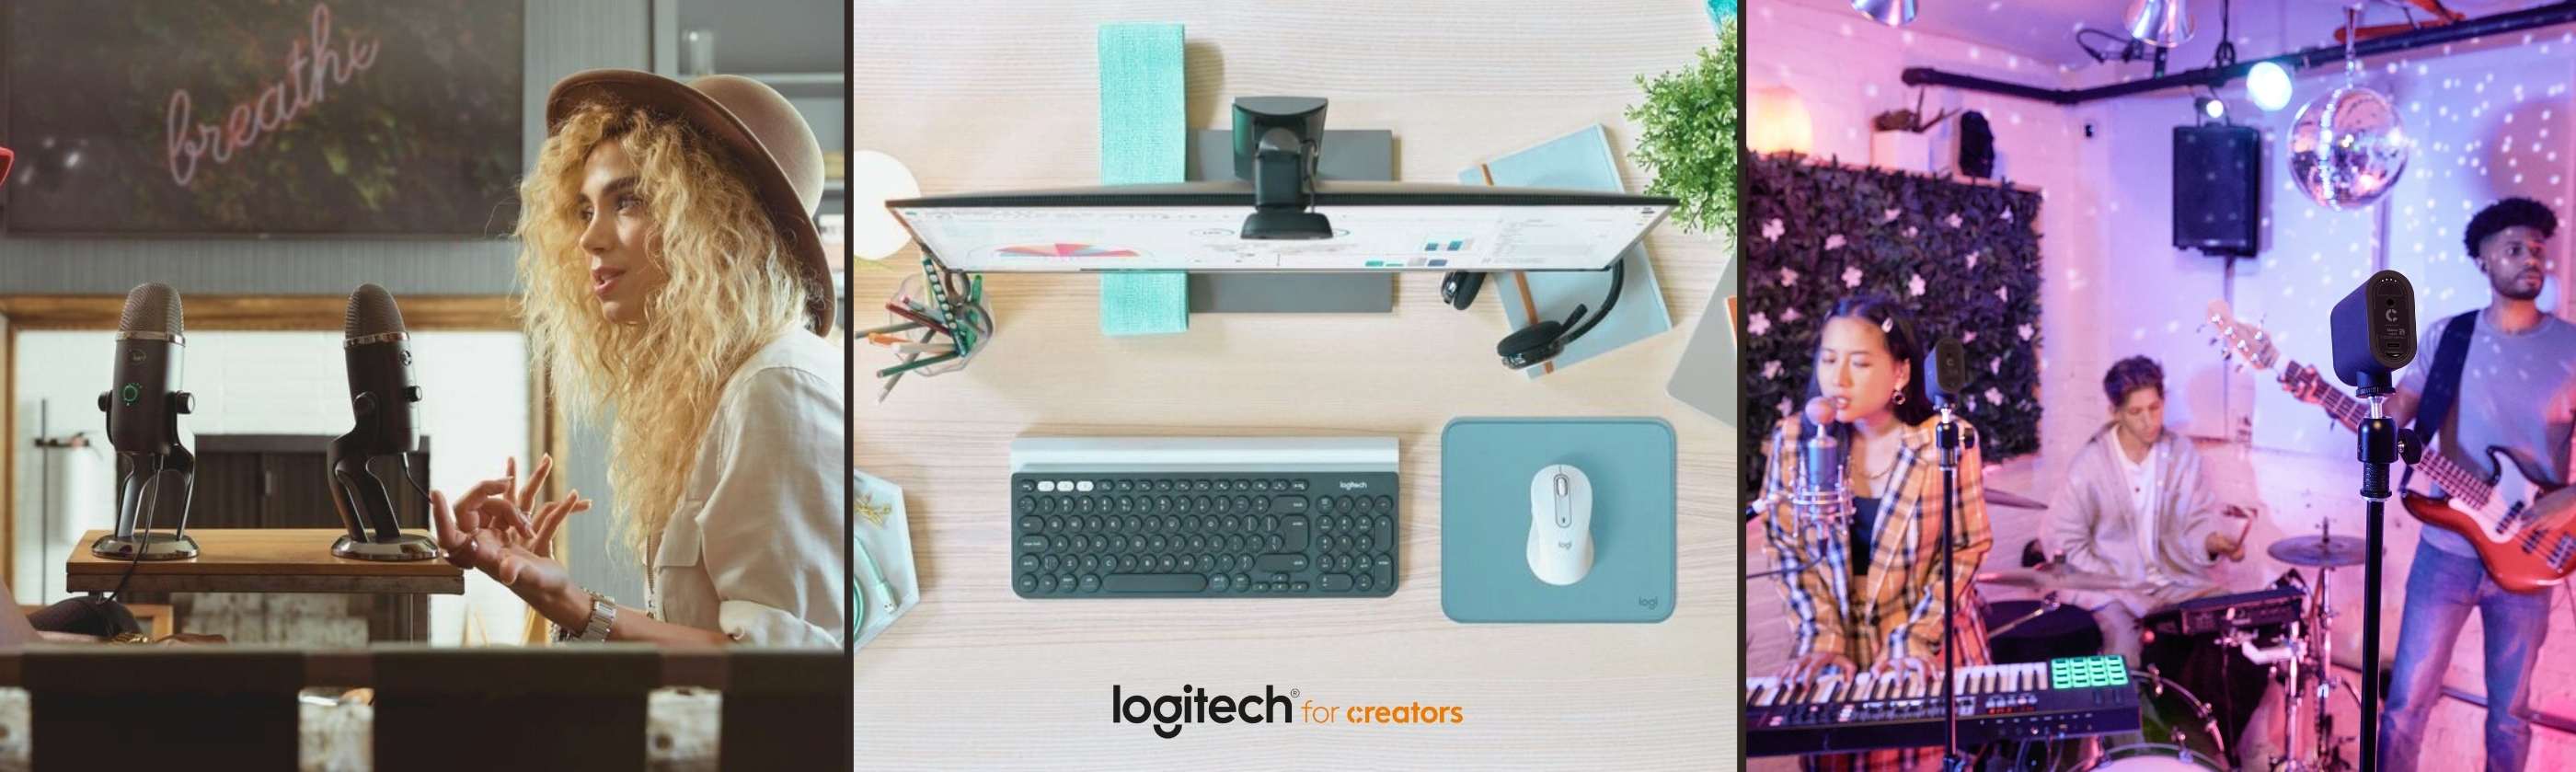  Logitech for Creators